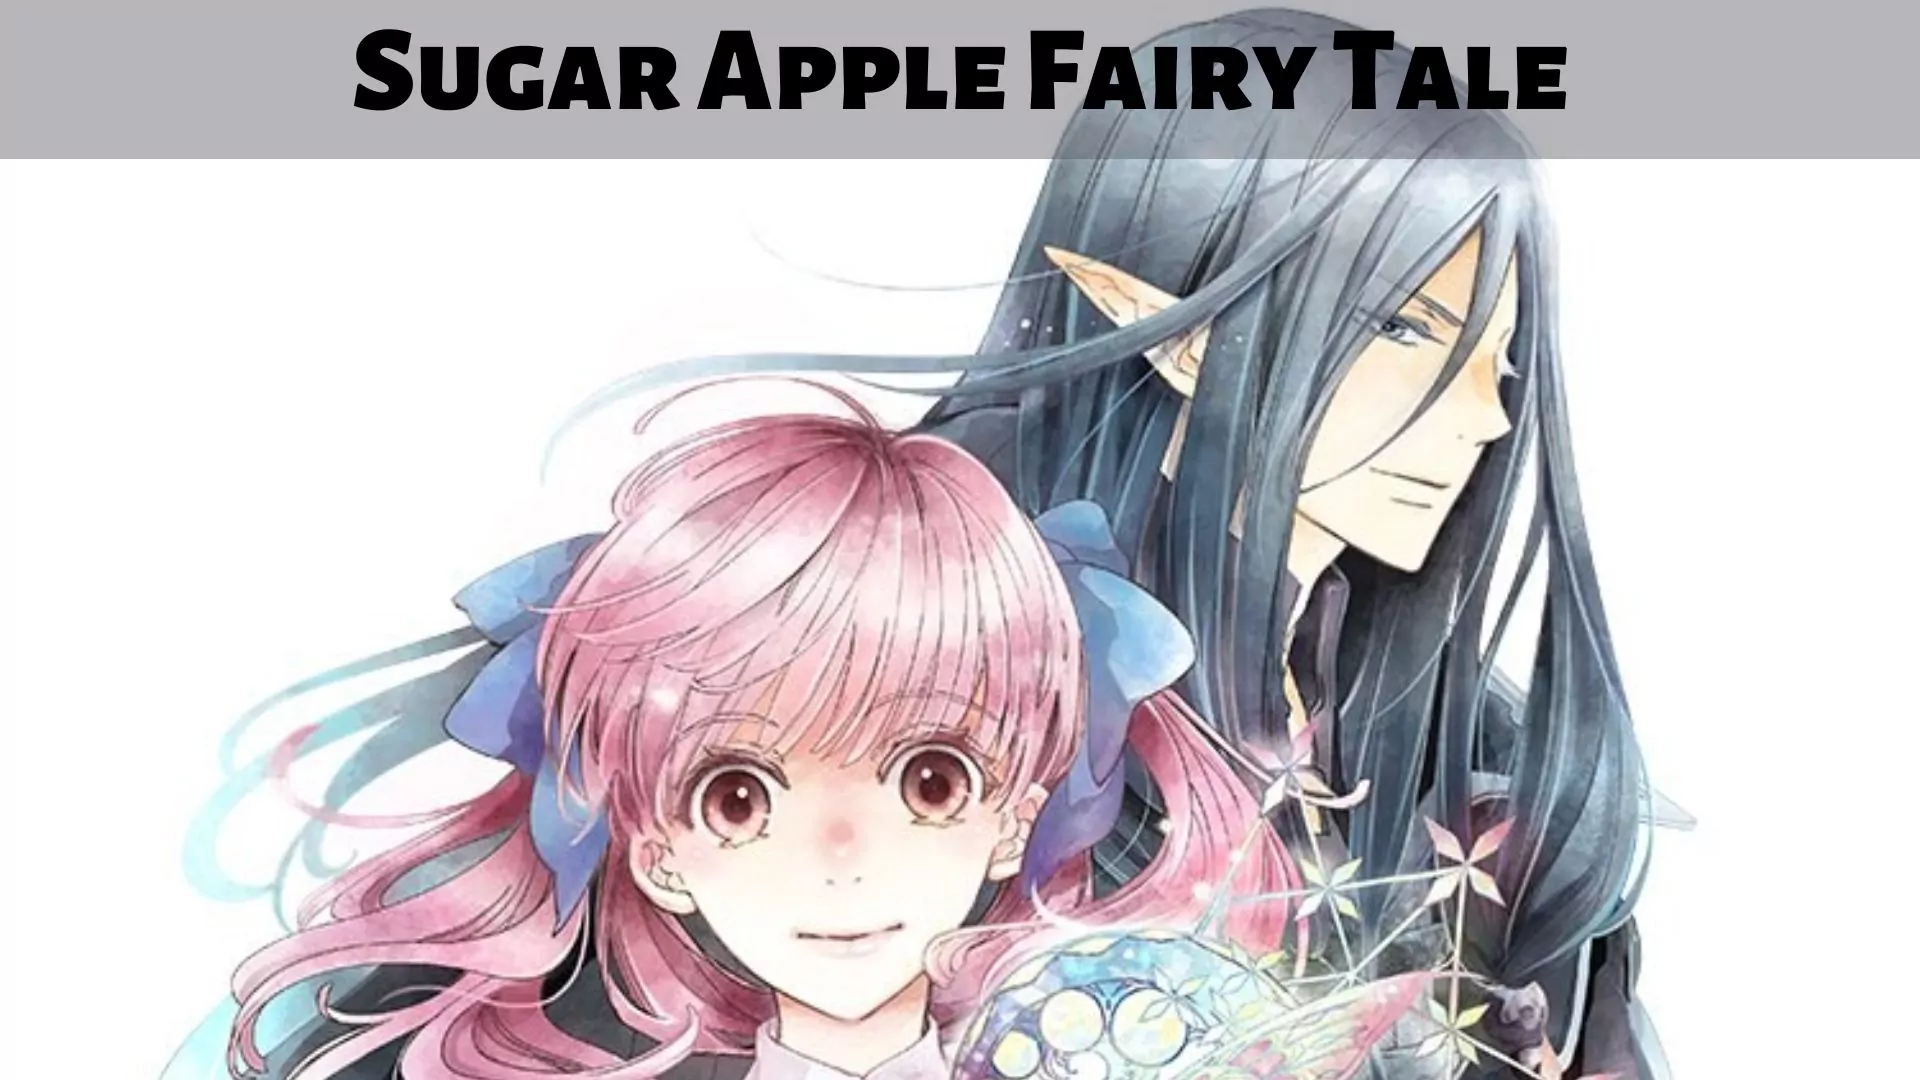 Sugar Apple Fairy Tale - MangaDex